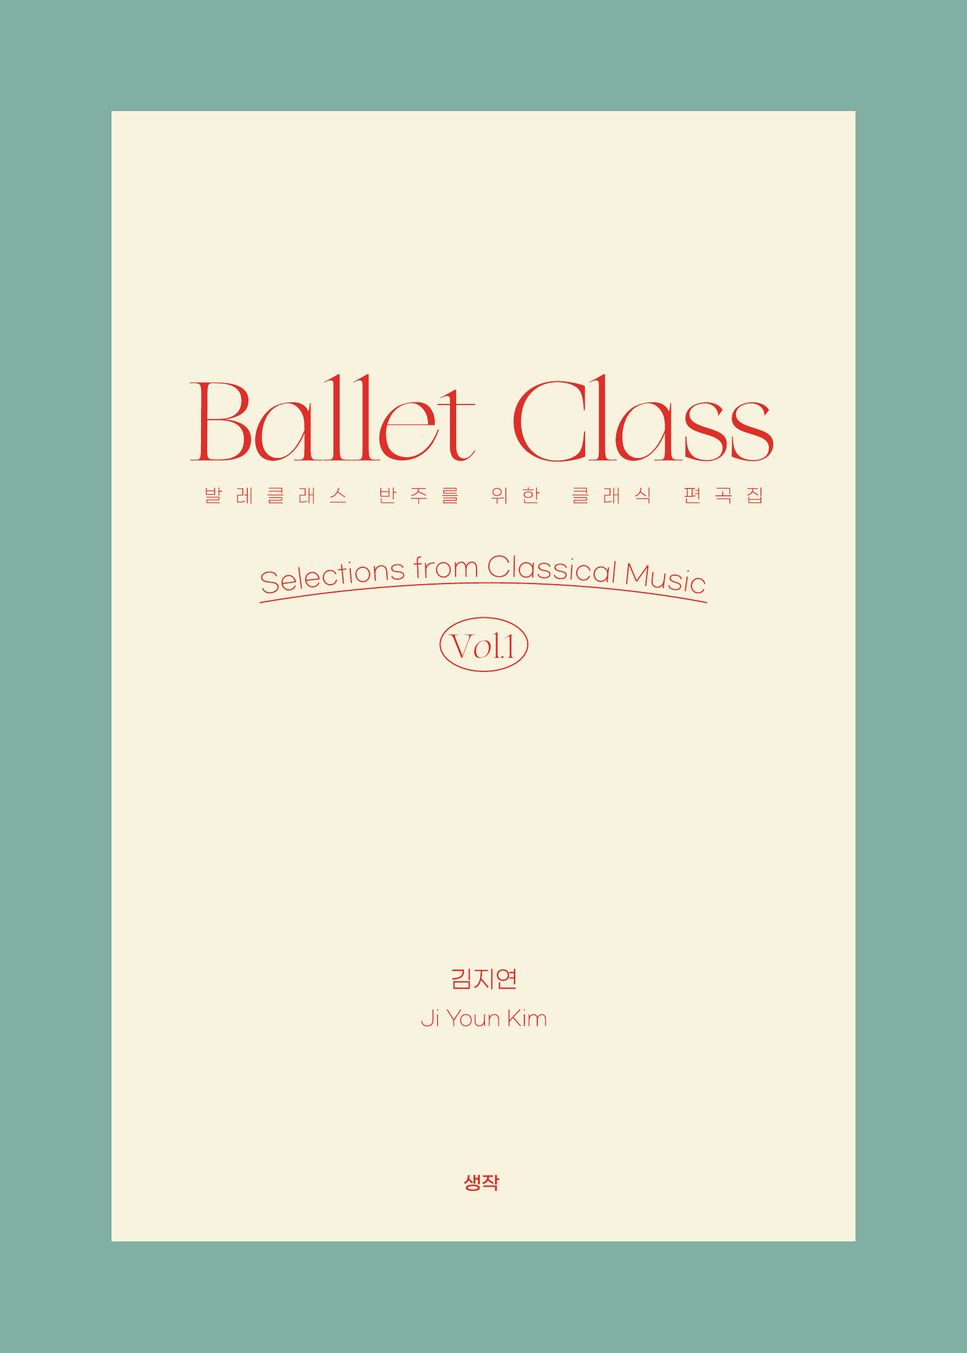 Ji Youn Kim - Ballet Class vol. 1 Selections from Classical Music (28tracks) by Ji  Youn Kim